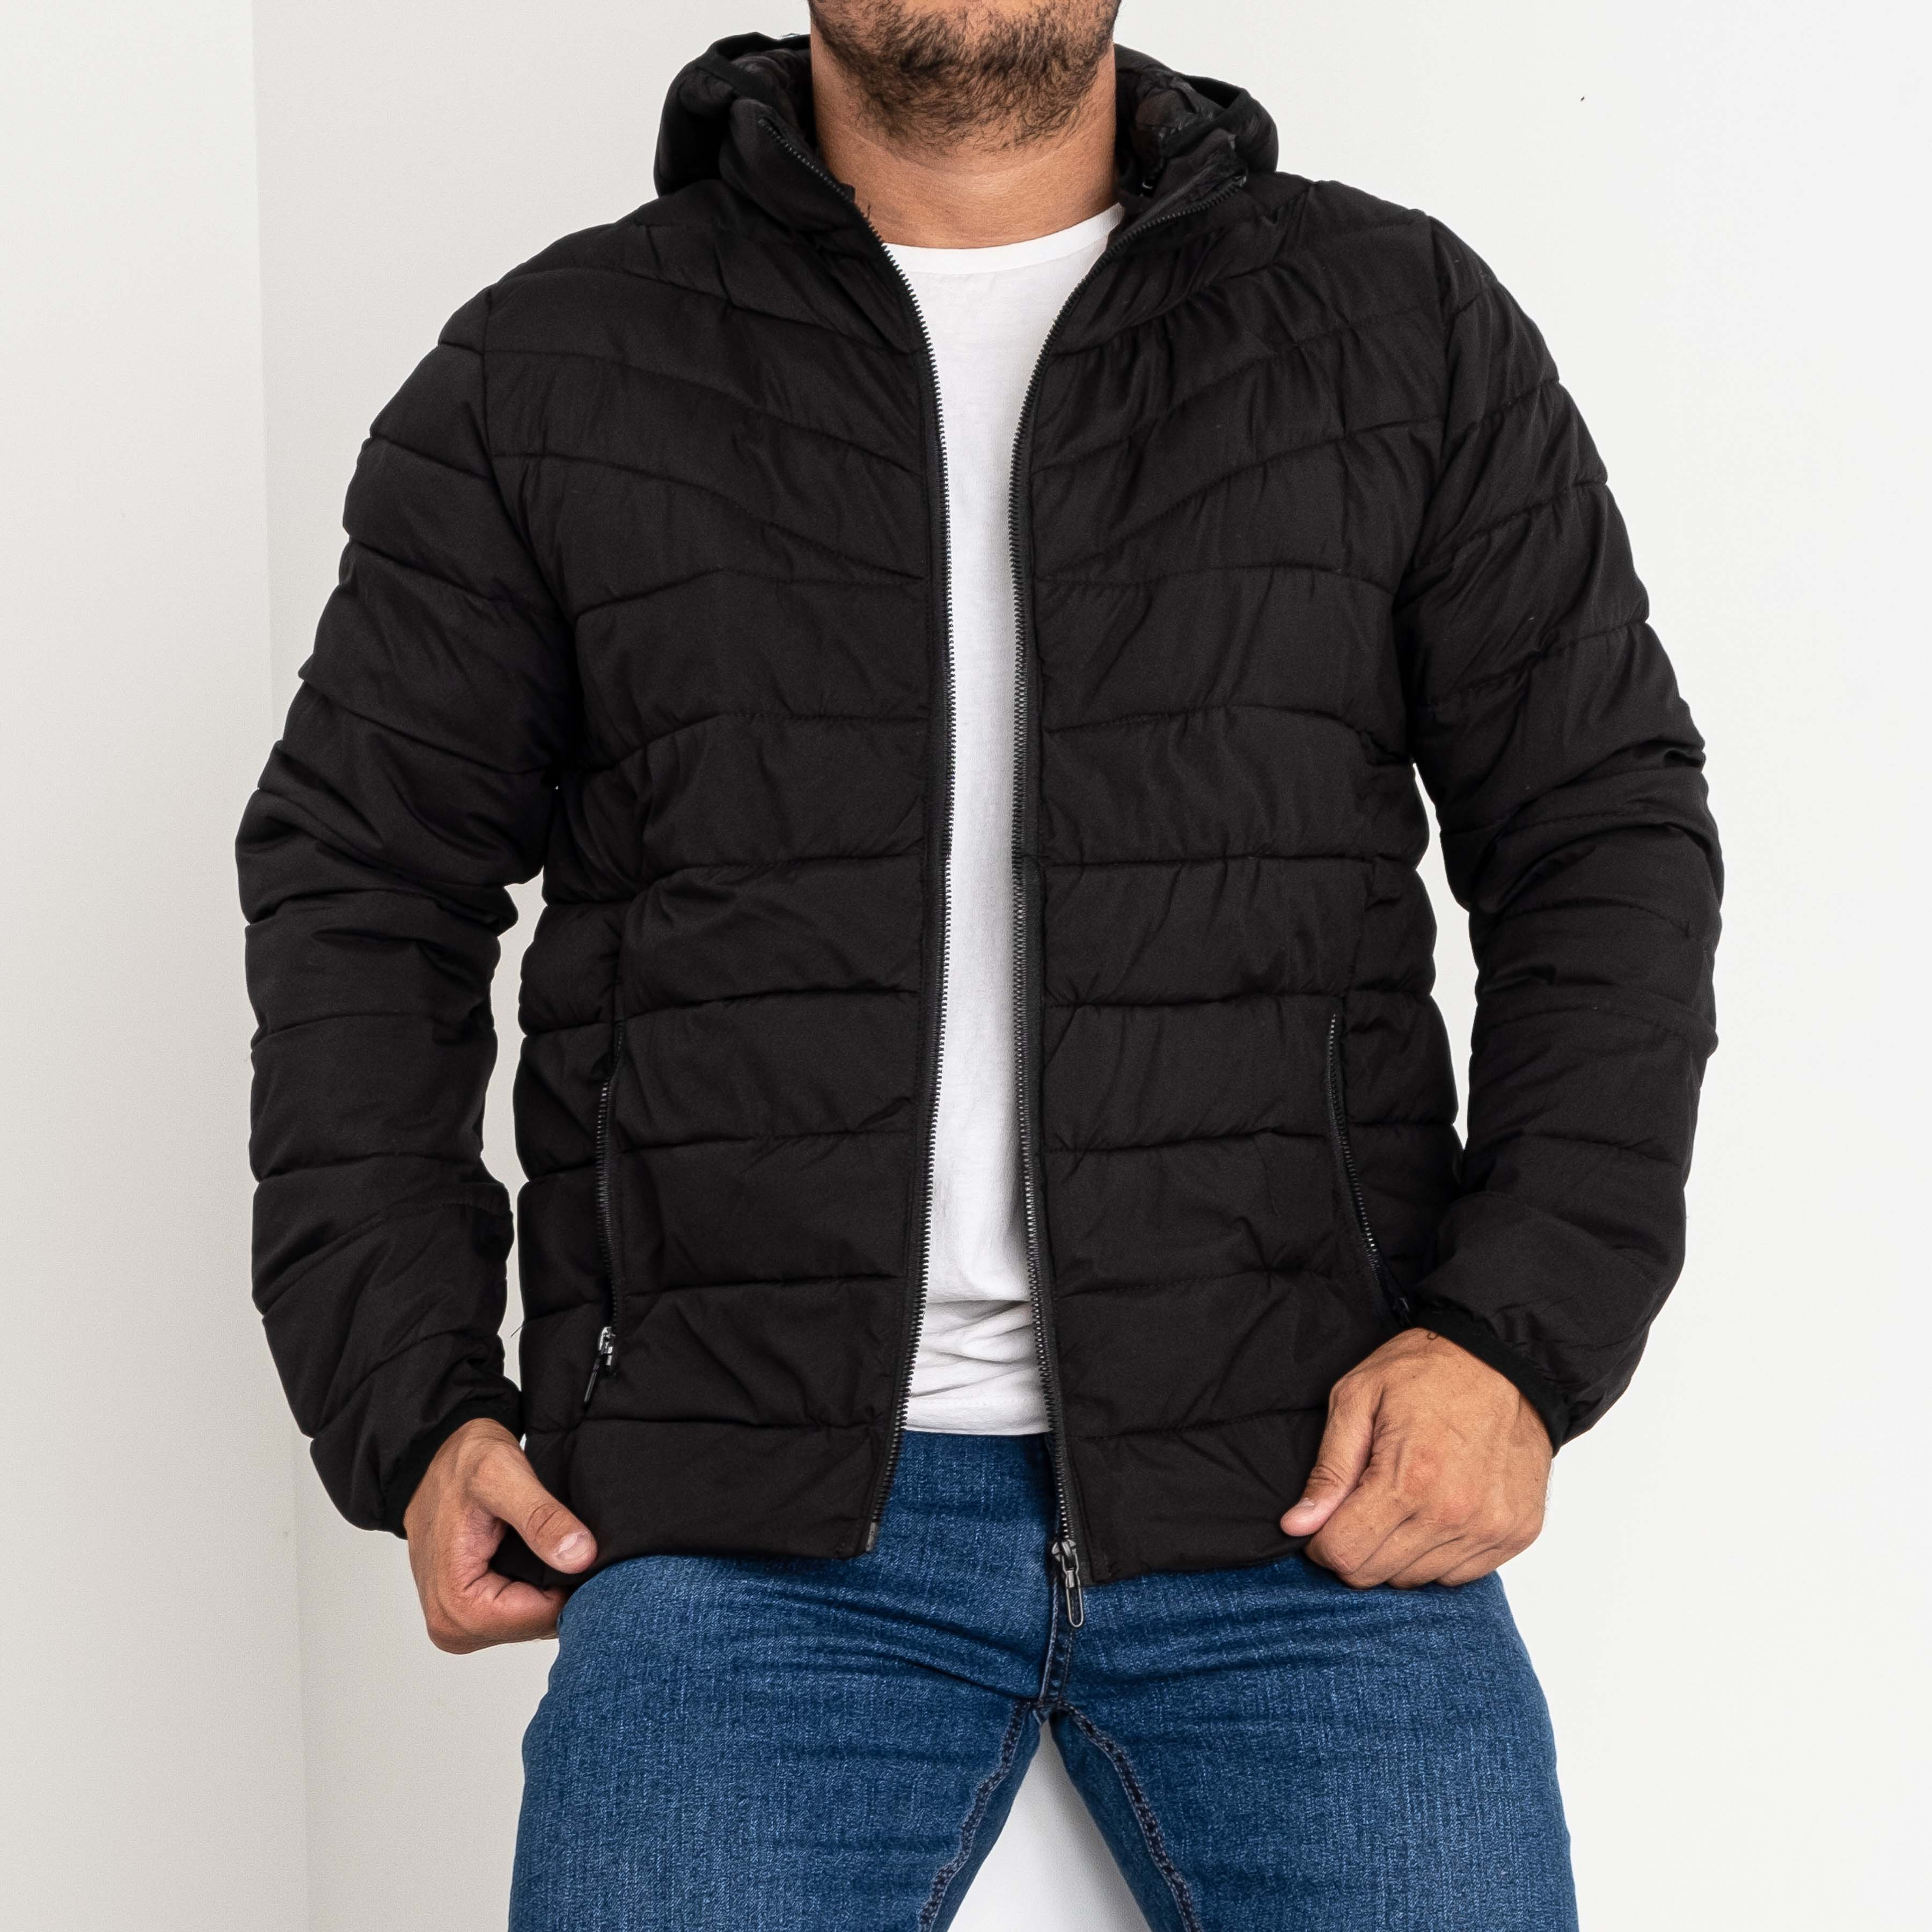 2297-1 LINKEVOGUE куртка мужская чёрная с капюшоном на синтепоне (5 ед. размеры: M.L.XL.2XL.3XL)